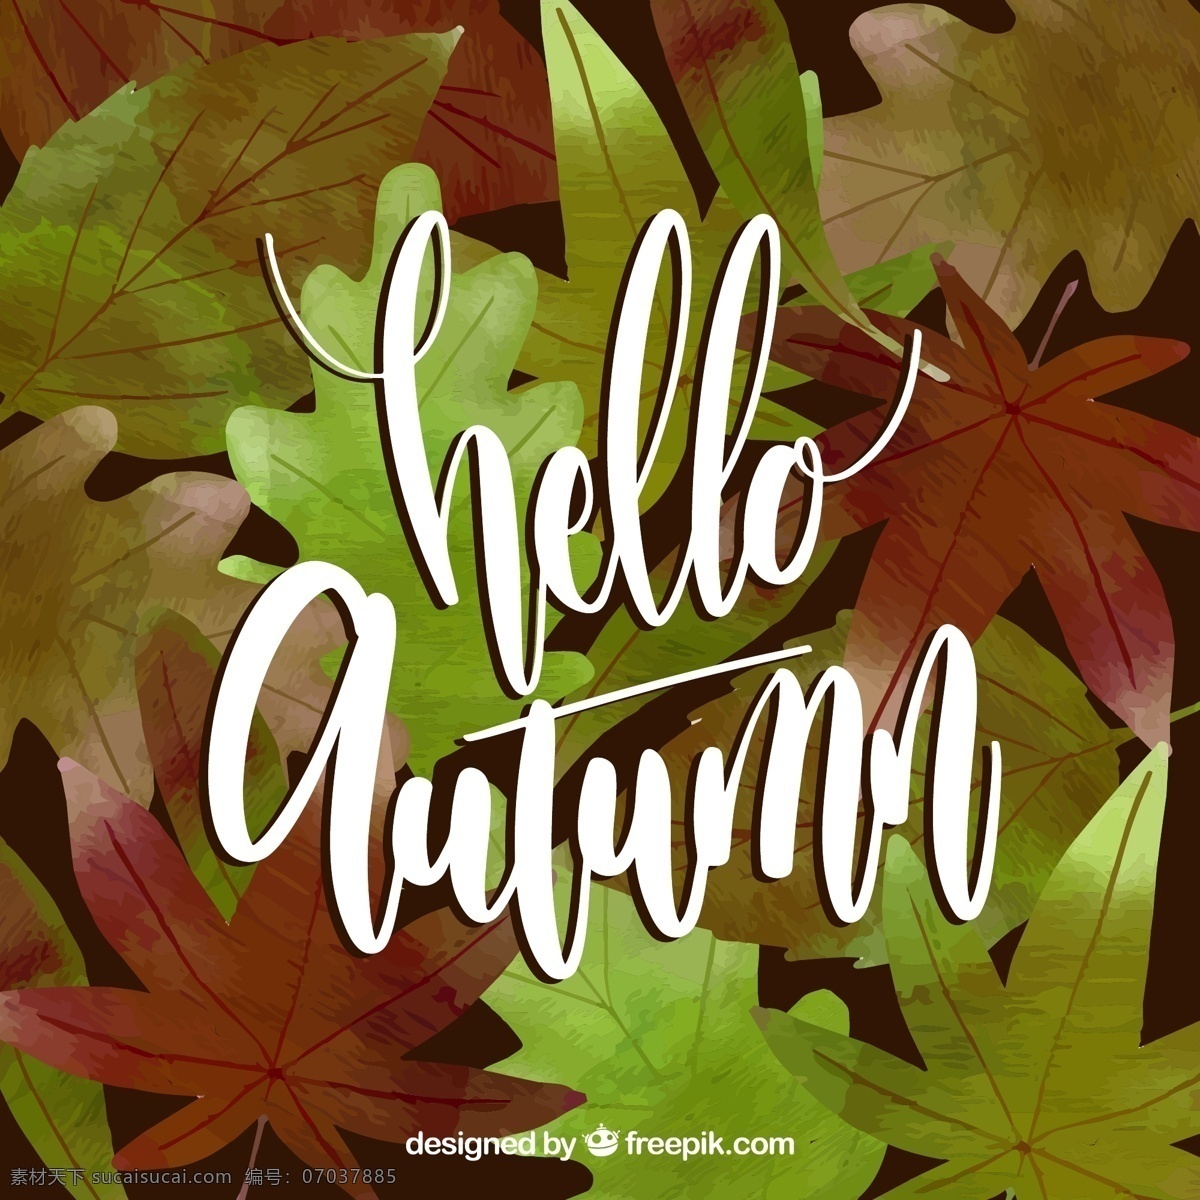 你好 秋天的背景 背景 水彩 水 手 叶 自然 涂料 水彩背景 壁纸 秋天 艺术 色彩 树叶 优雅 墨水 丰富多彩